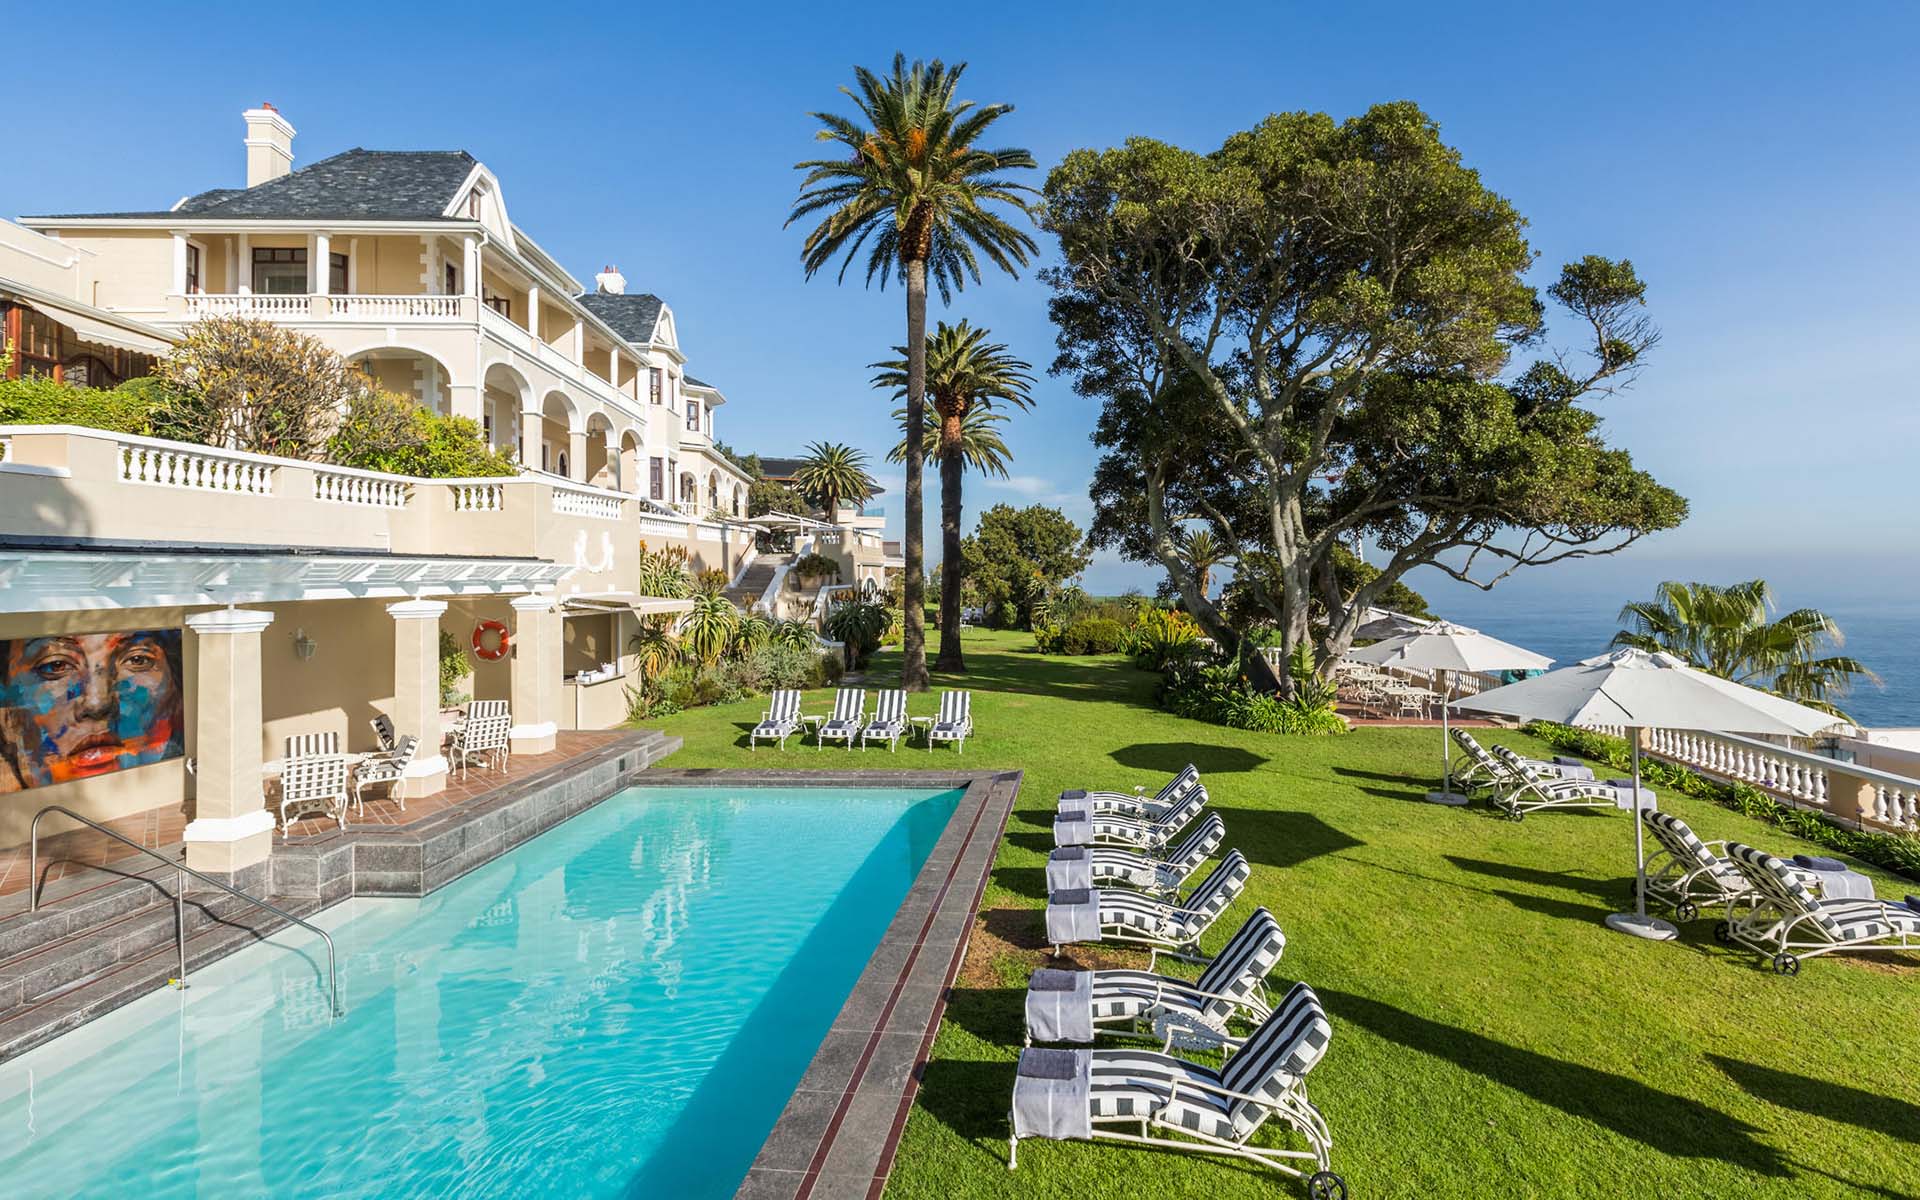 Ellerman House pool and ocean views, part of Ker & Downey Africa’s best Africa safaris of 2022.